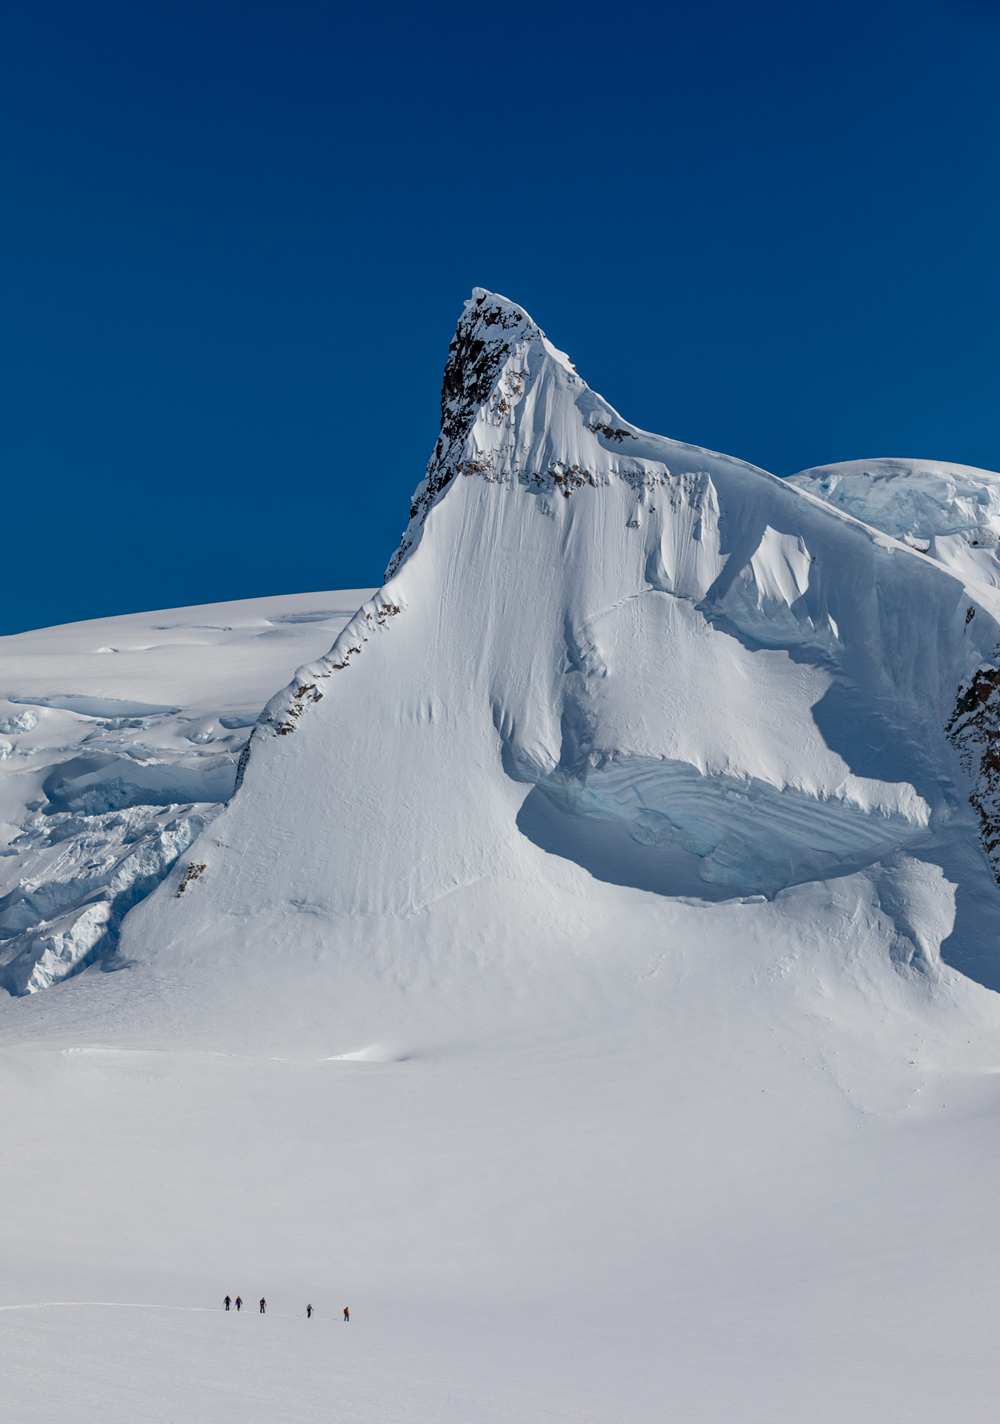 Climbing the "It Doesn't Matterhorn"